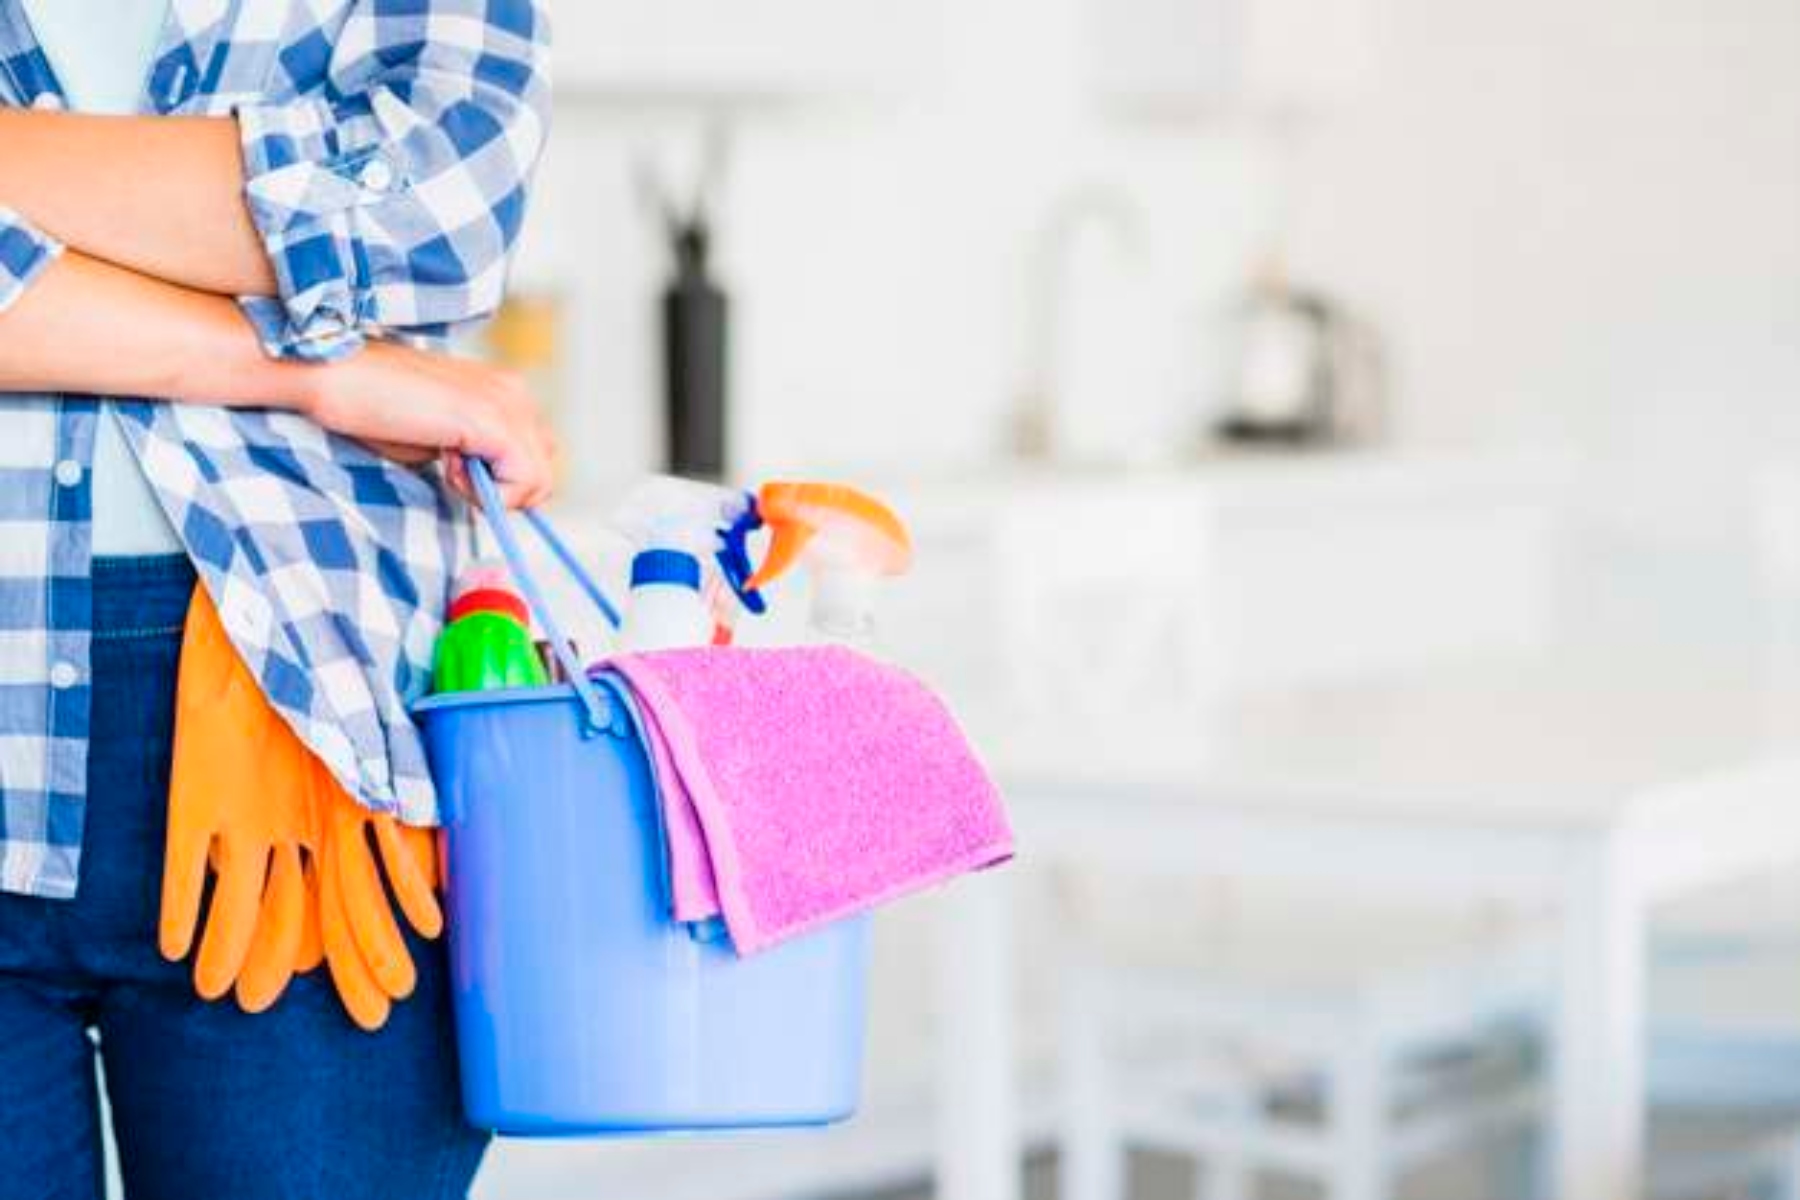 Υγιεινή: 5 κοινά προϊόντα καθαρισμού που μπορούν να βλάψουν την υγεία σας